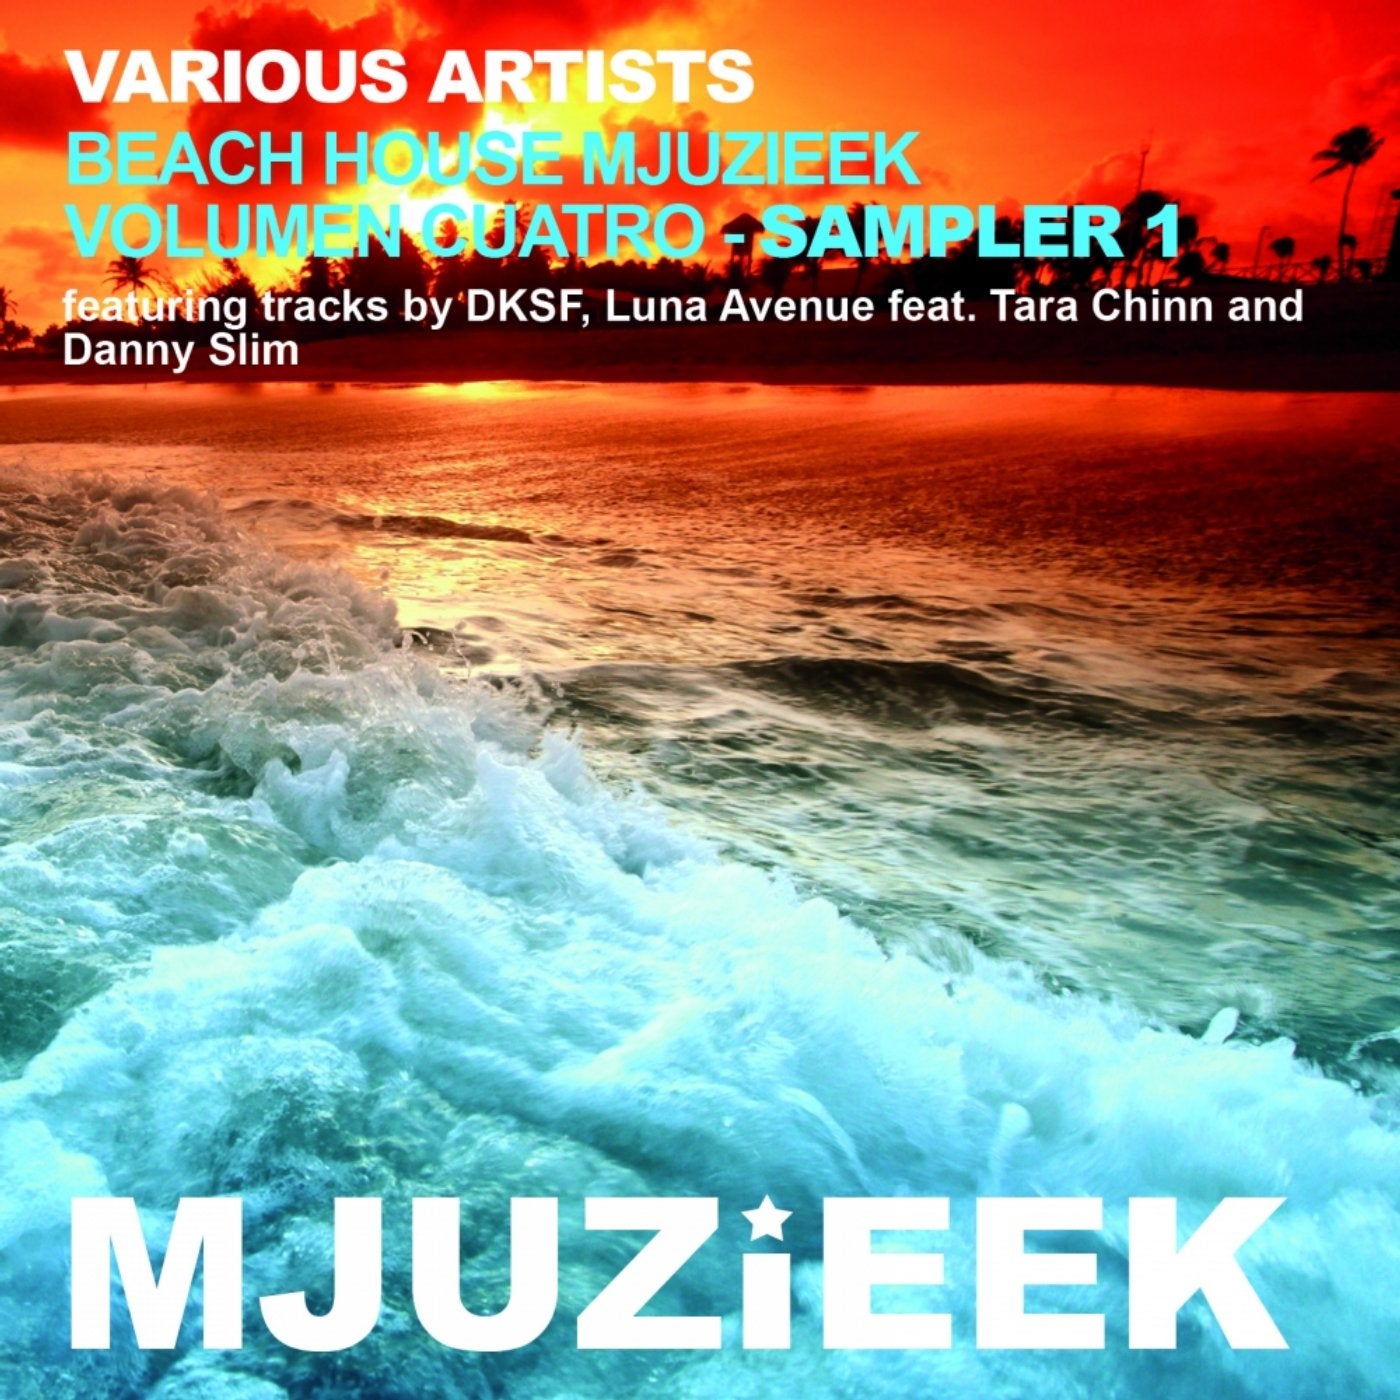 Beach House Mjuzieek - Vol. 4 - Sampler 1